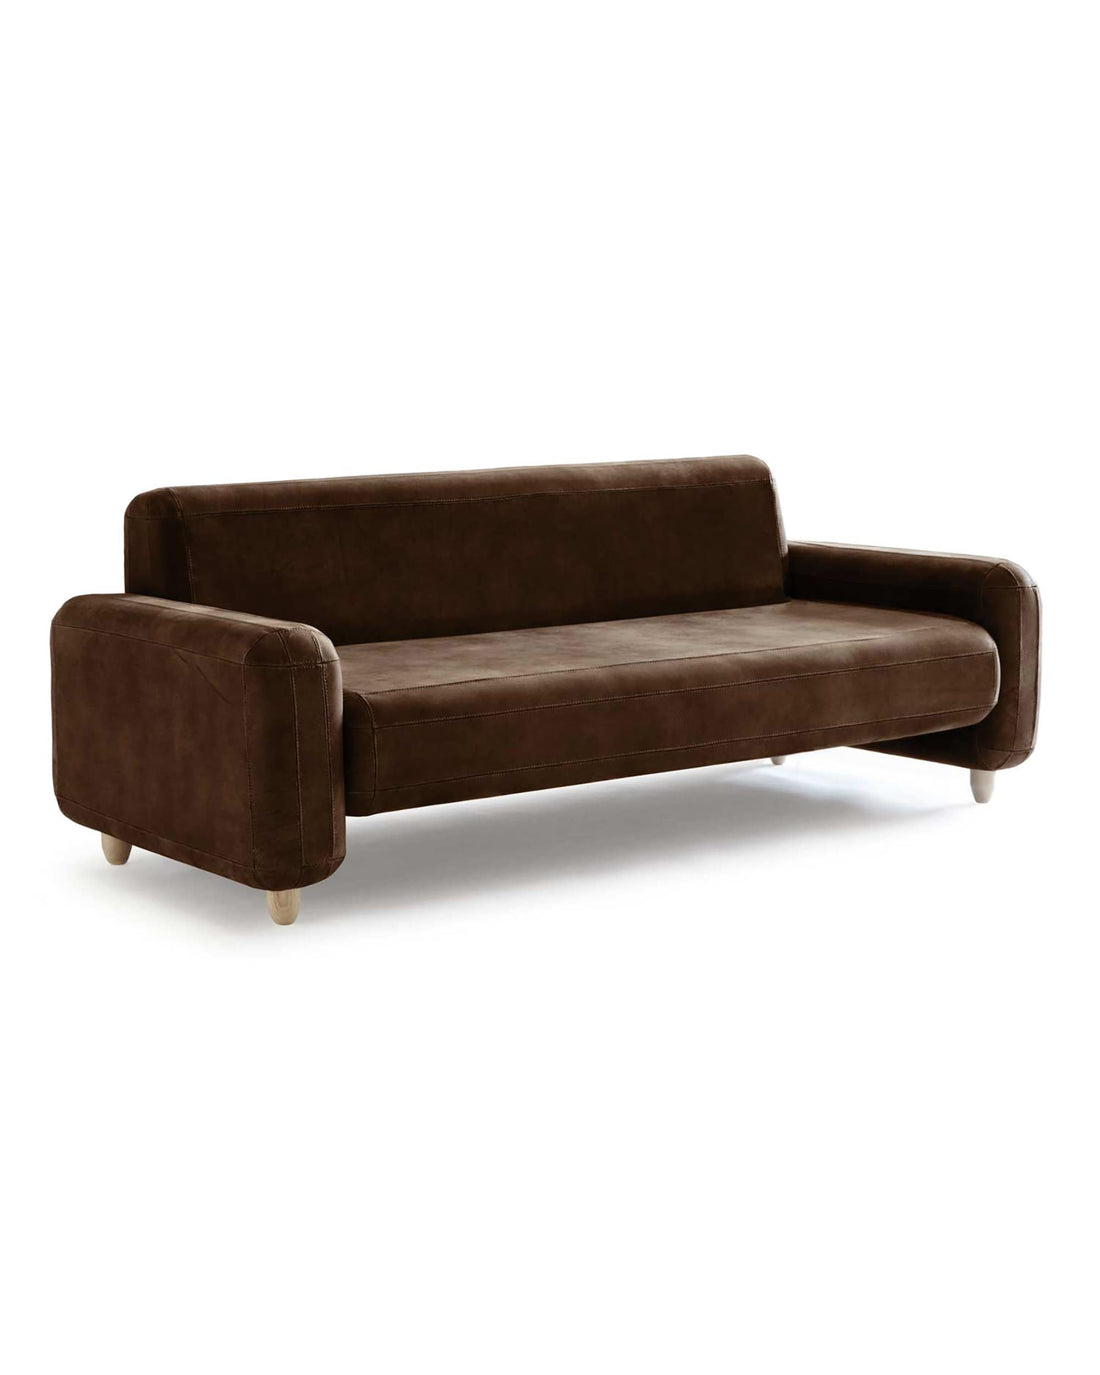 Traco sofa - 2